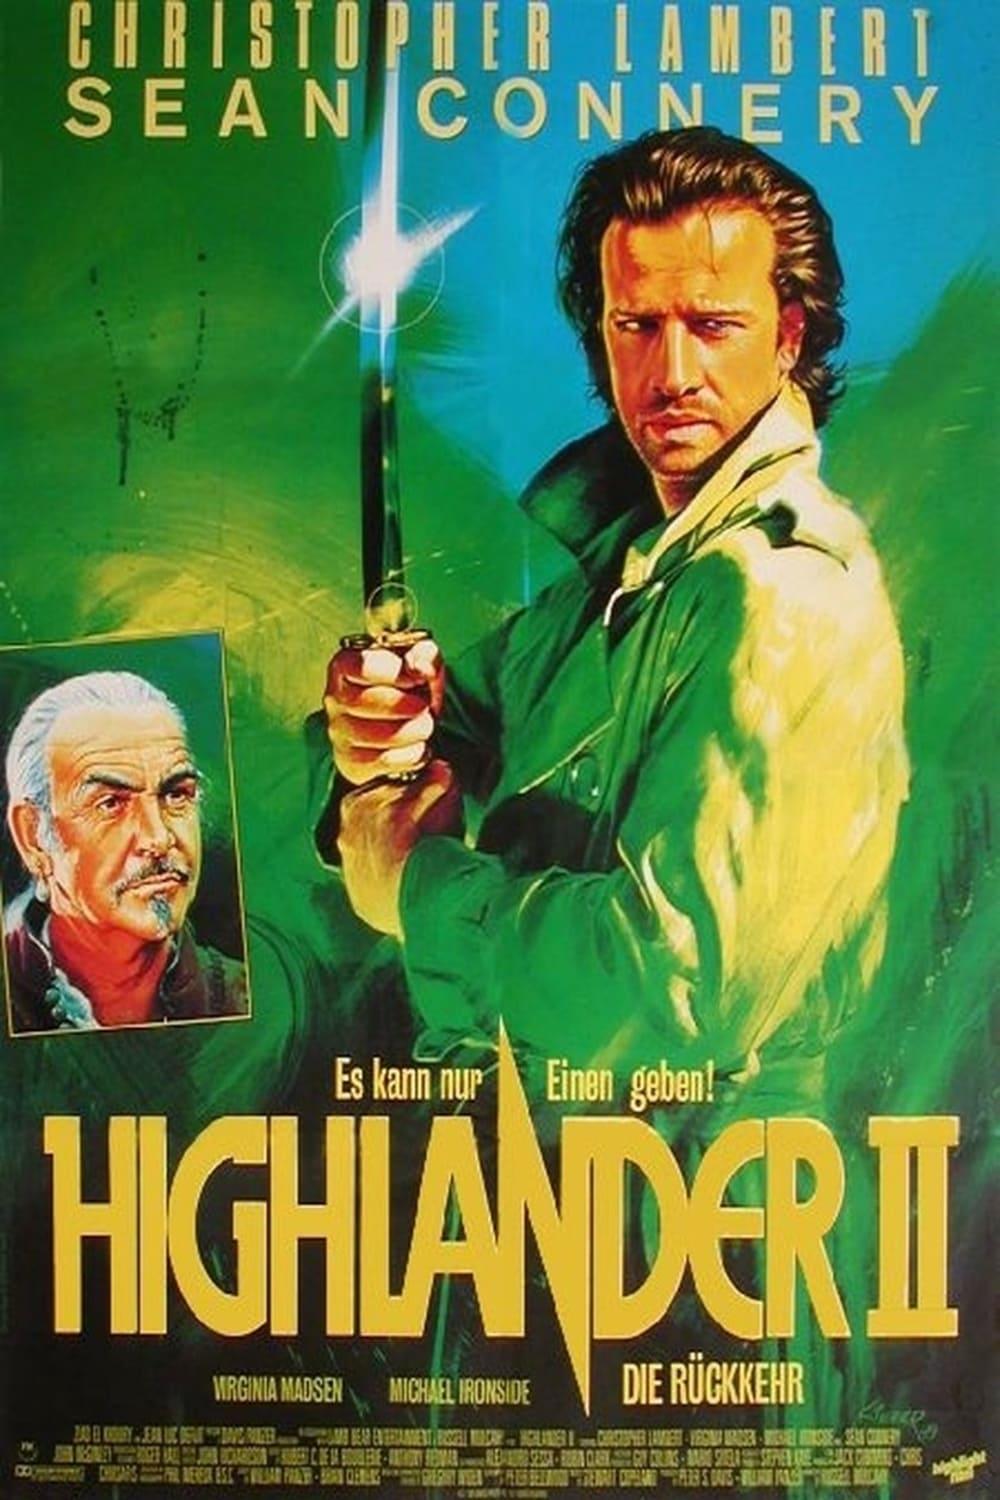 Highlander II - Die Rückkehr poster